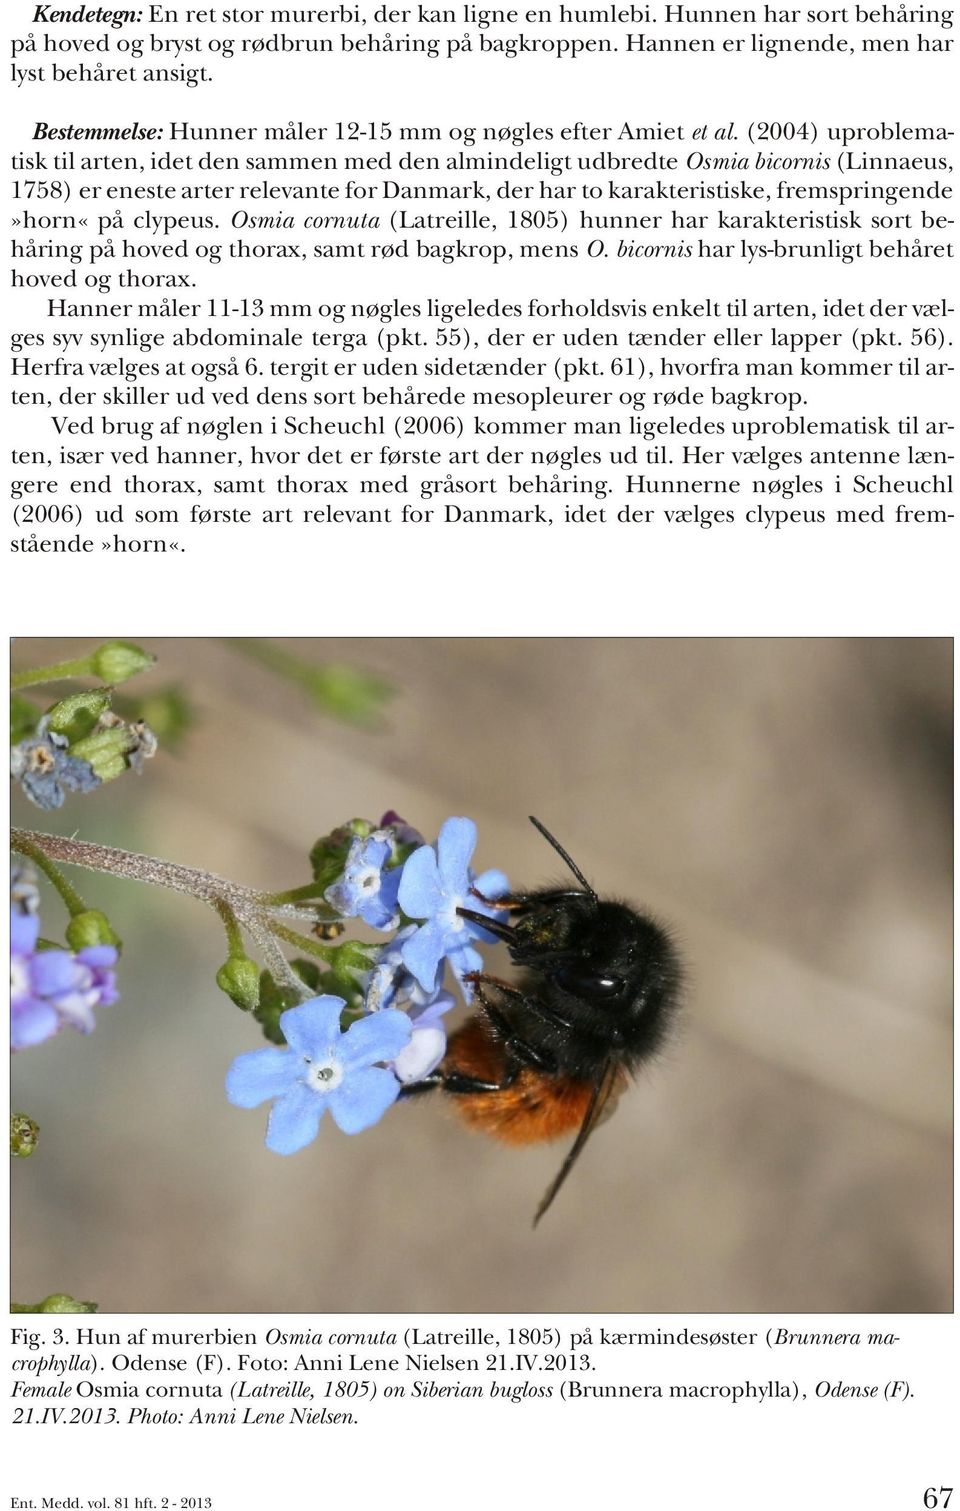 (2004) uproblematisk til arten, idet den sammen med den almindeligt udbredte Osmia bicornis (Linnaeus, 1758) er eneste arter relevante for Danmark, der har to karakteristiske, fremspringende»horn«på